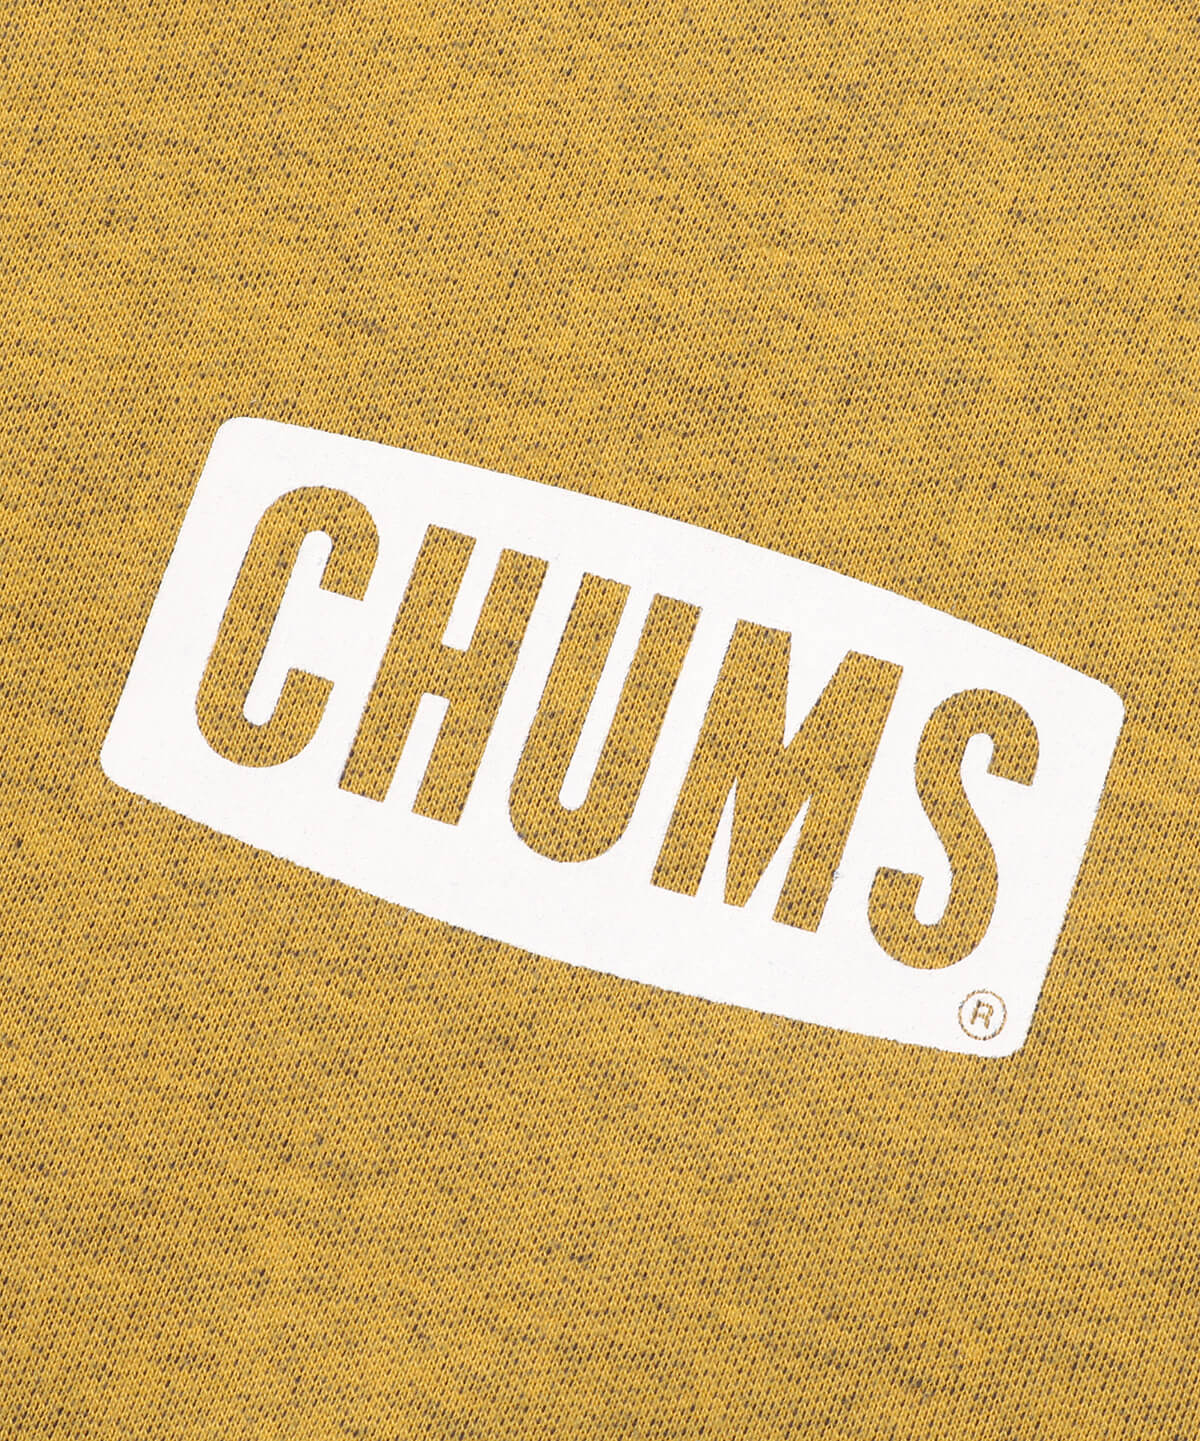 Chums One Point Logo Crew チャムスワンポイントロゴクルー パーカー スウェット M Golden トップス Chums チャムス アウトドアファッション公式通販